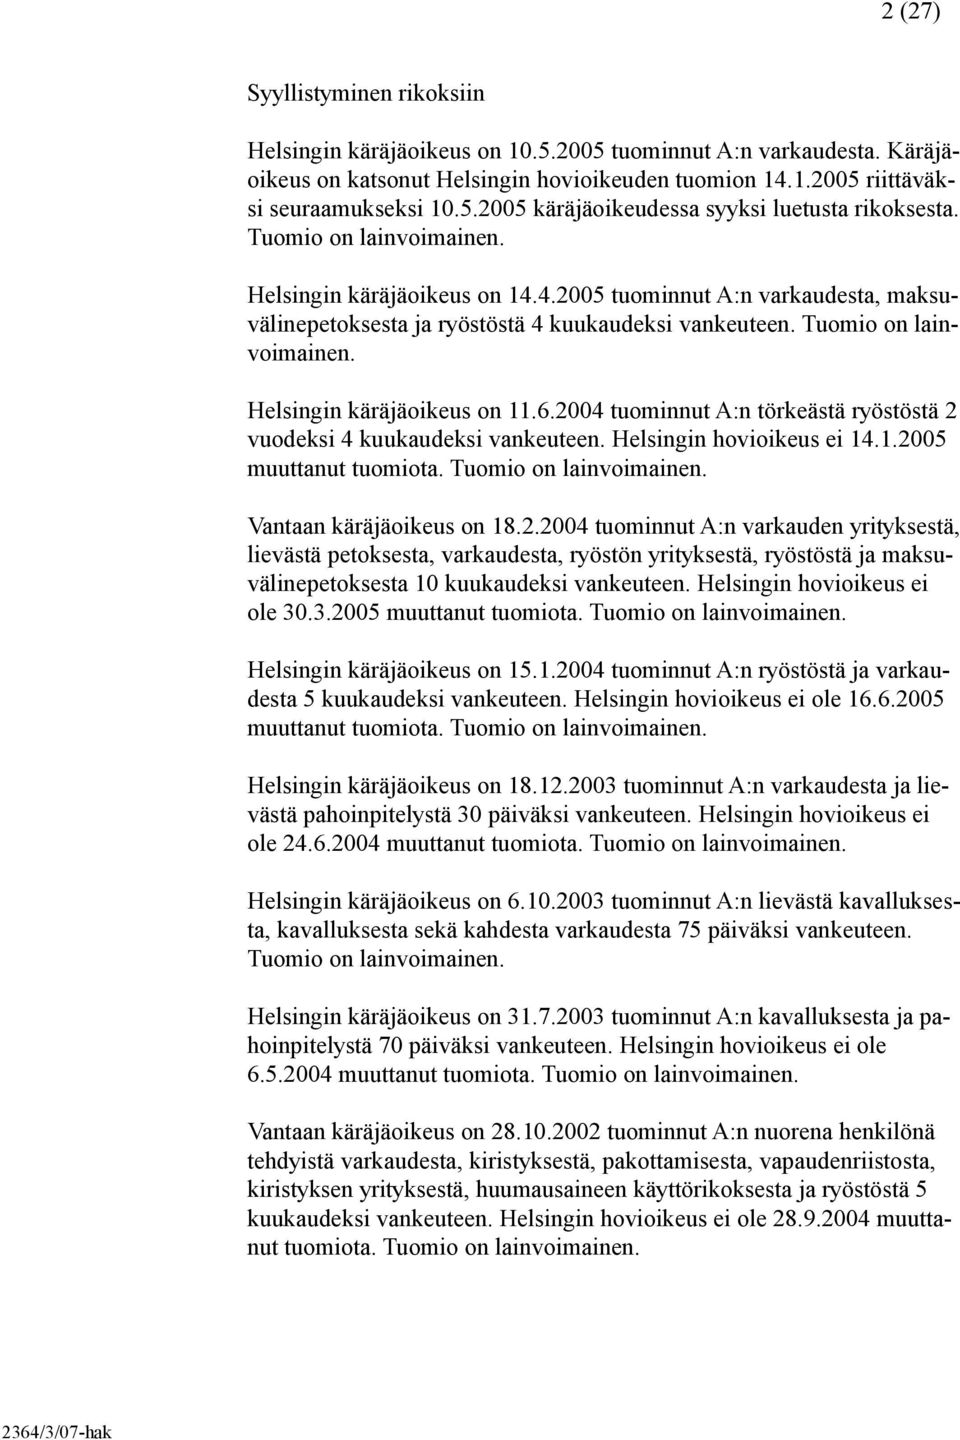 Helsingin käräjäoikeus on 11.6.2004 tuominnut A:n törkeästä ryöstöstä 2 vuodeksi 4 kuukaudeksi vankeuteen. Helsingin hovioikeus ei 14.1.2005 muuttanut tuomiota. Tuomio on lainvoimainen.